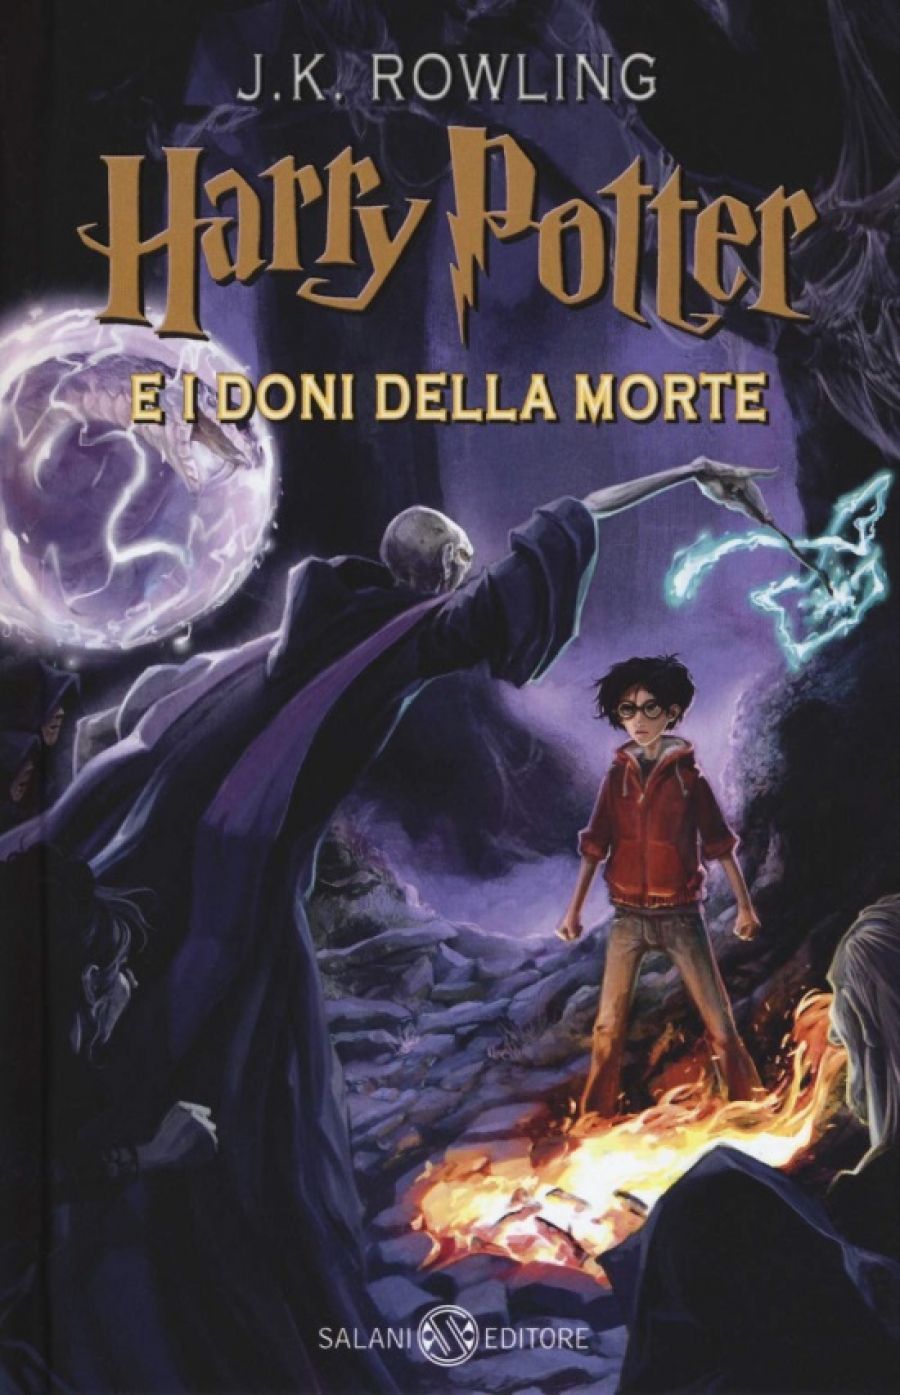 Rowling J.K. Harry Potter e i doni della morte: 7 